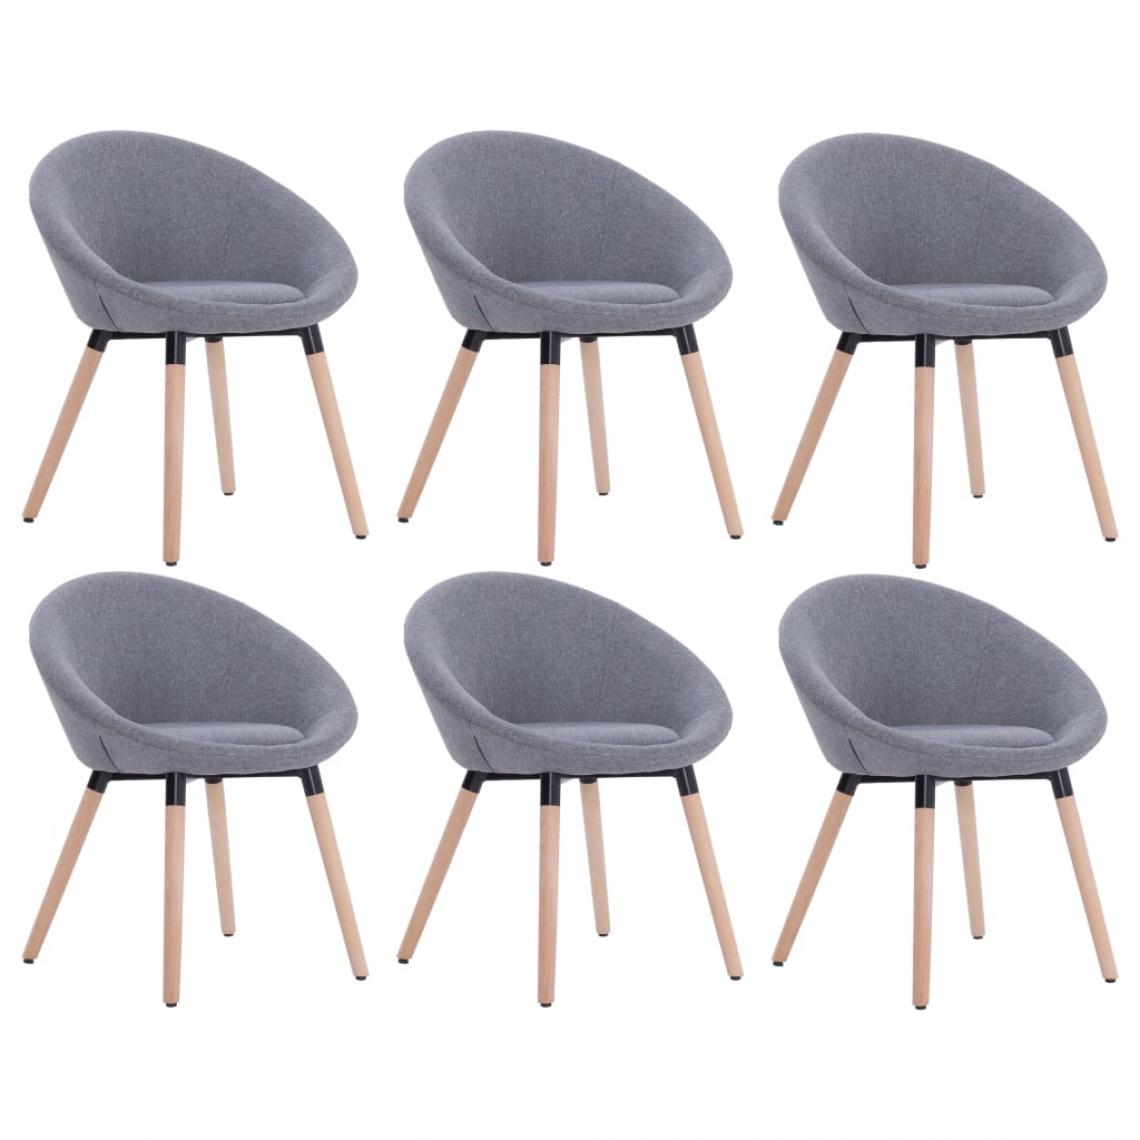 Decoshop26 - Lot de 6 chaises de salle à manger cuisine design contemporain tissu gris clair CDS022416 - Chaises